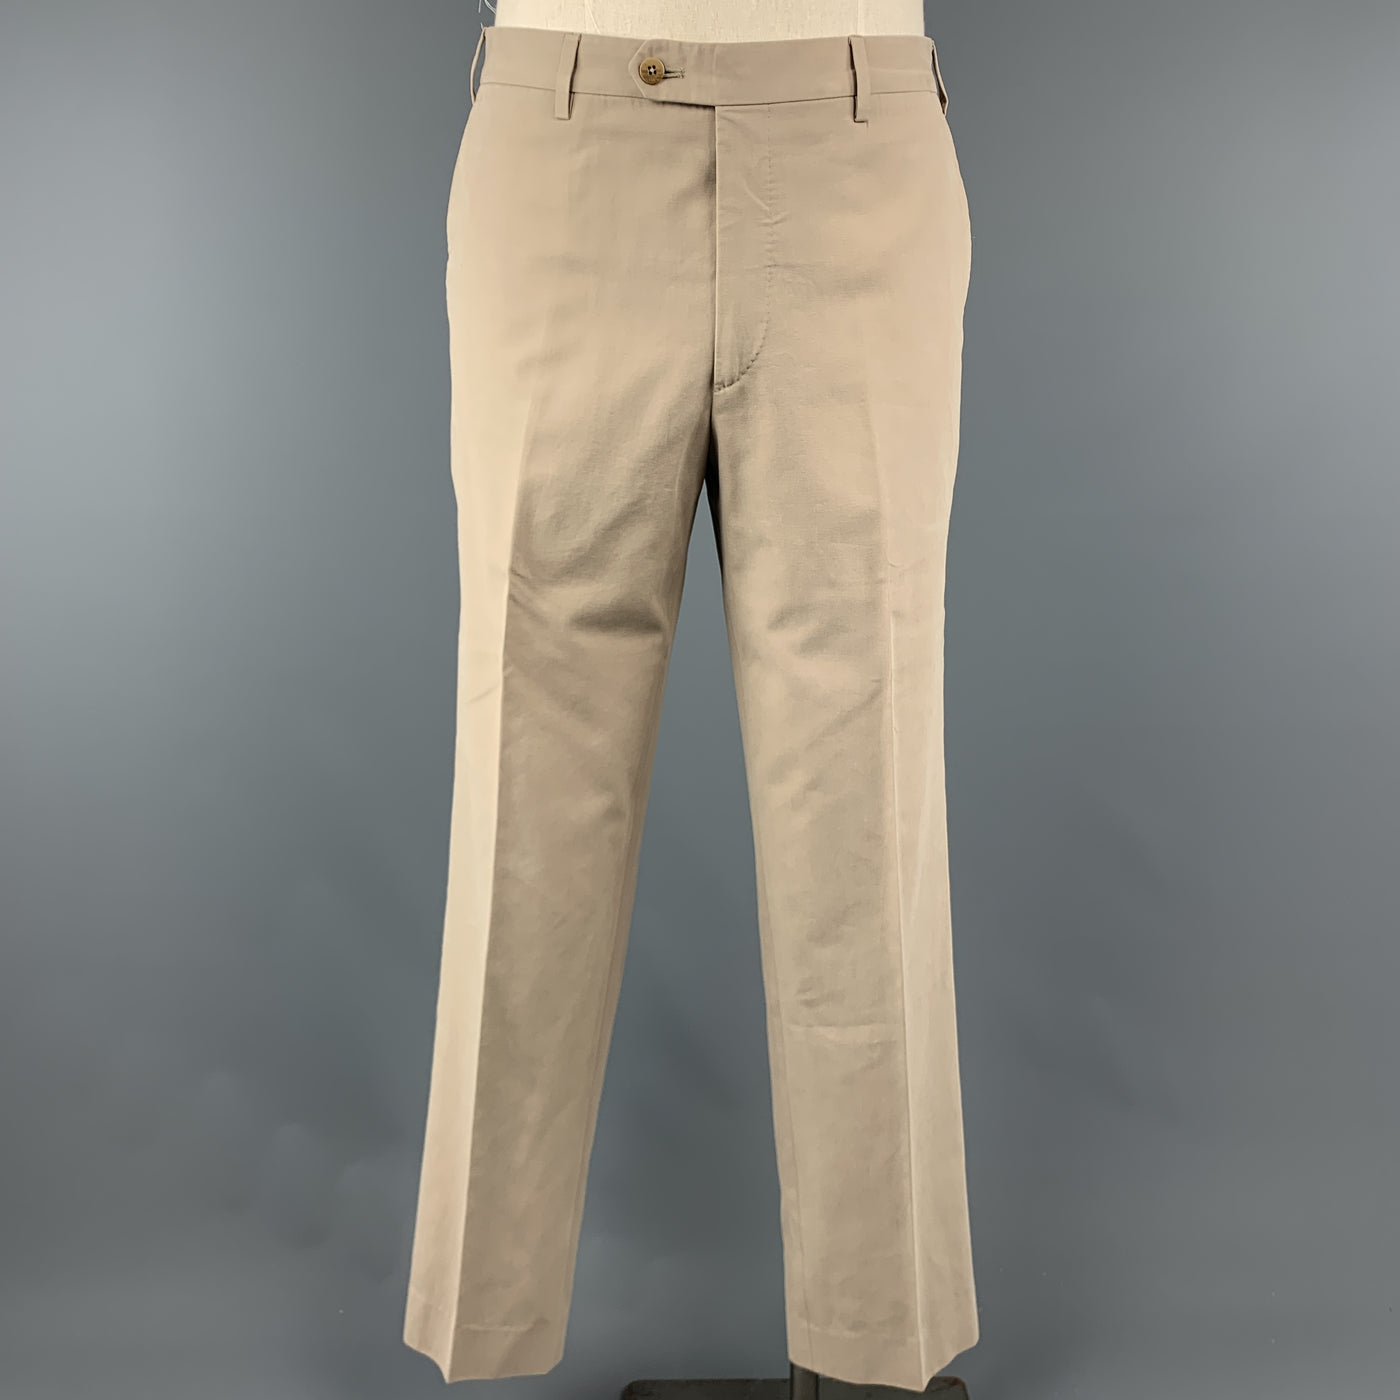 FACONNABLE 40 Long Khaki Solid Cotton 28 32 Notch Lapel  Suit